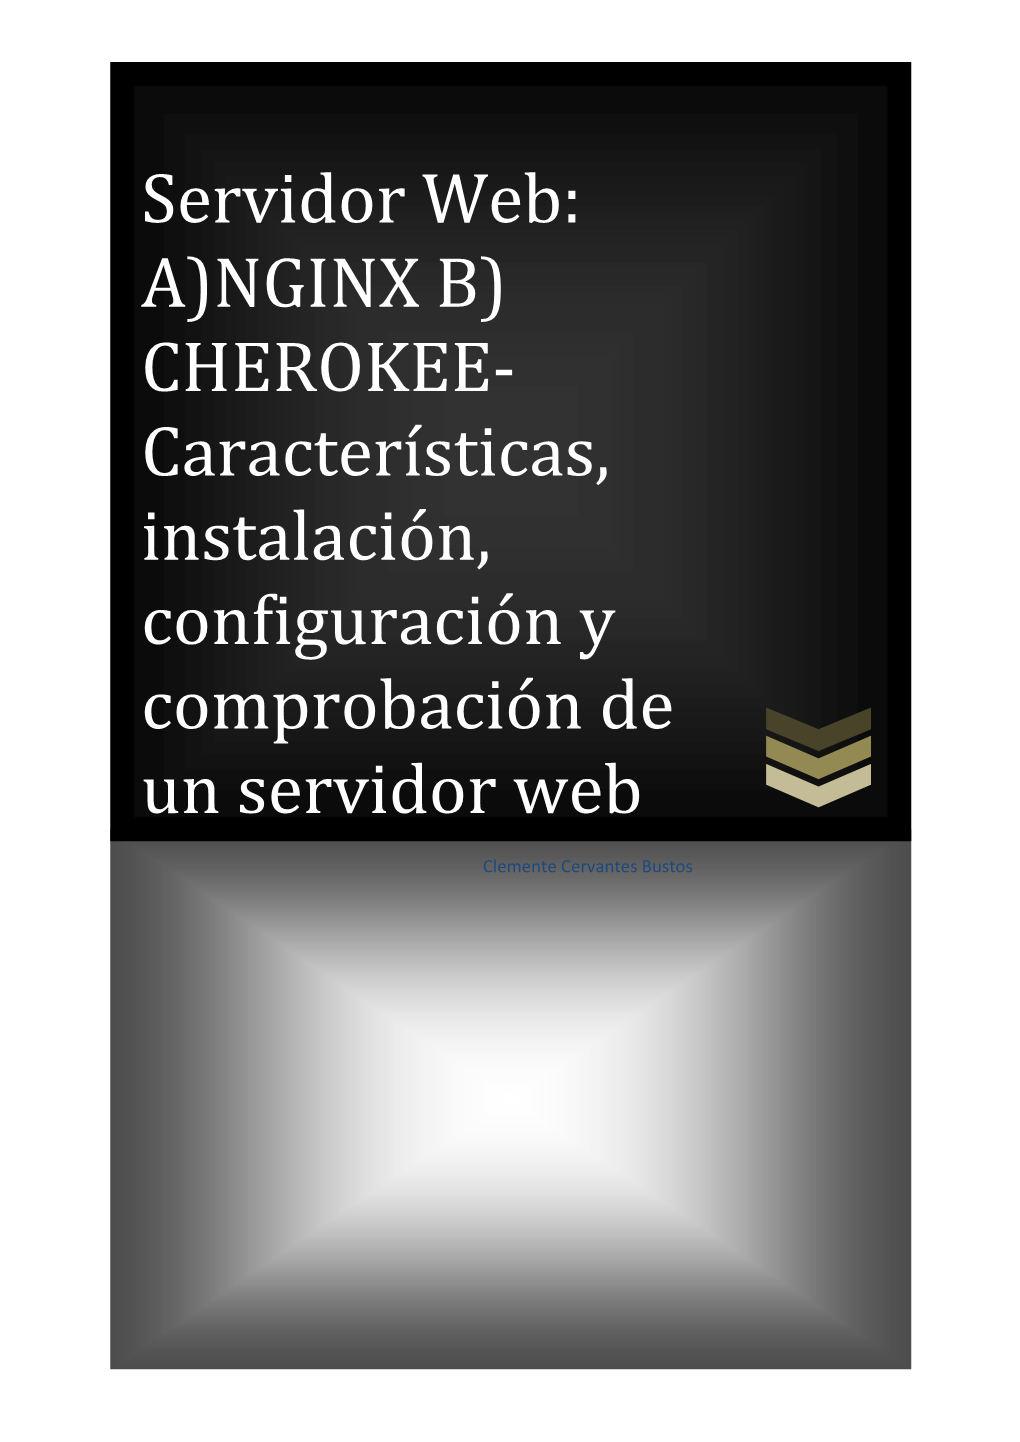 Servidor Web: A)NGINX B) CHEROKEE-Características